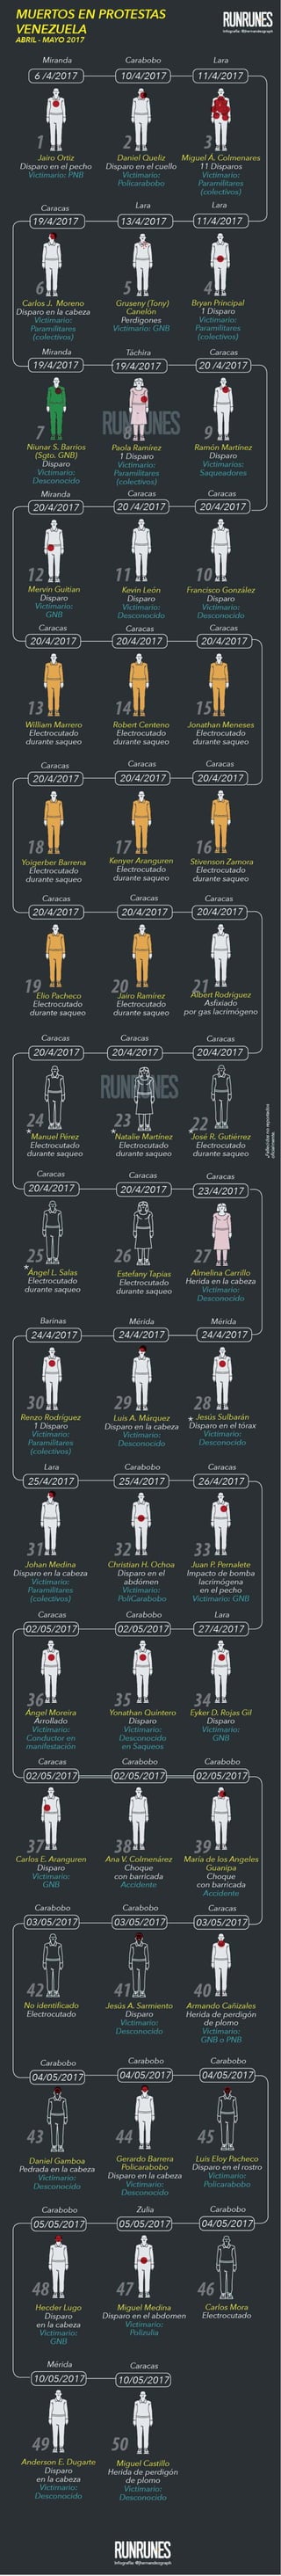 Infografía - Fallecidos en protestas Venezuela 2017 (Del 1 de abril hasta el 10 de mayo, cortesía de Runrunes)